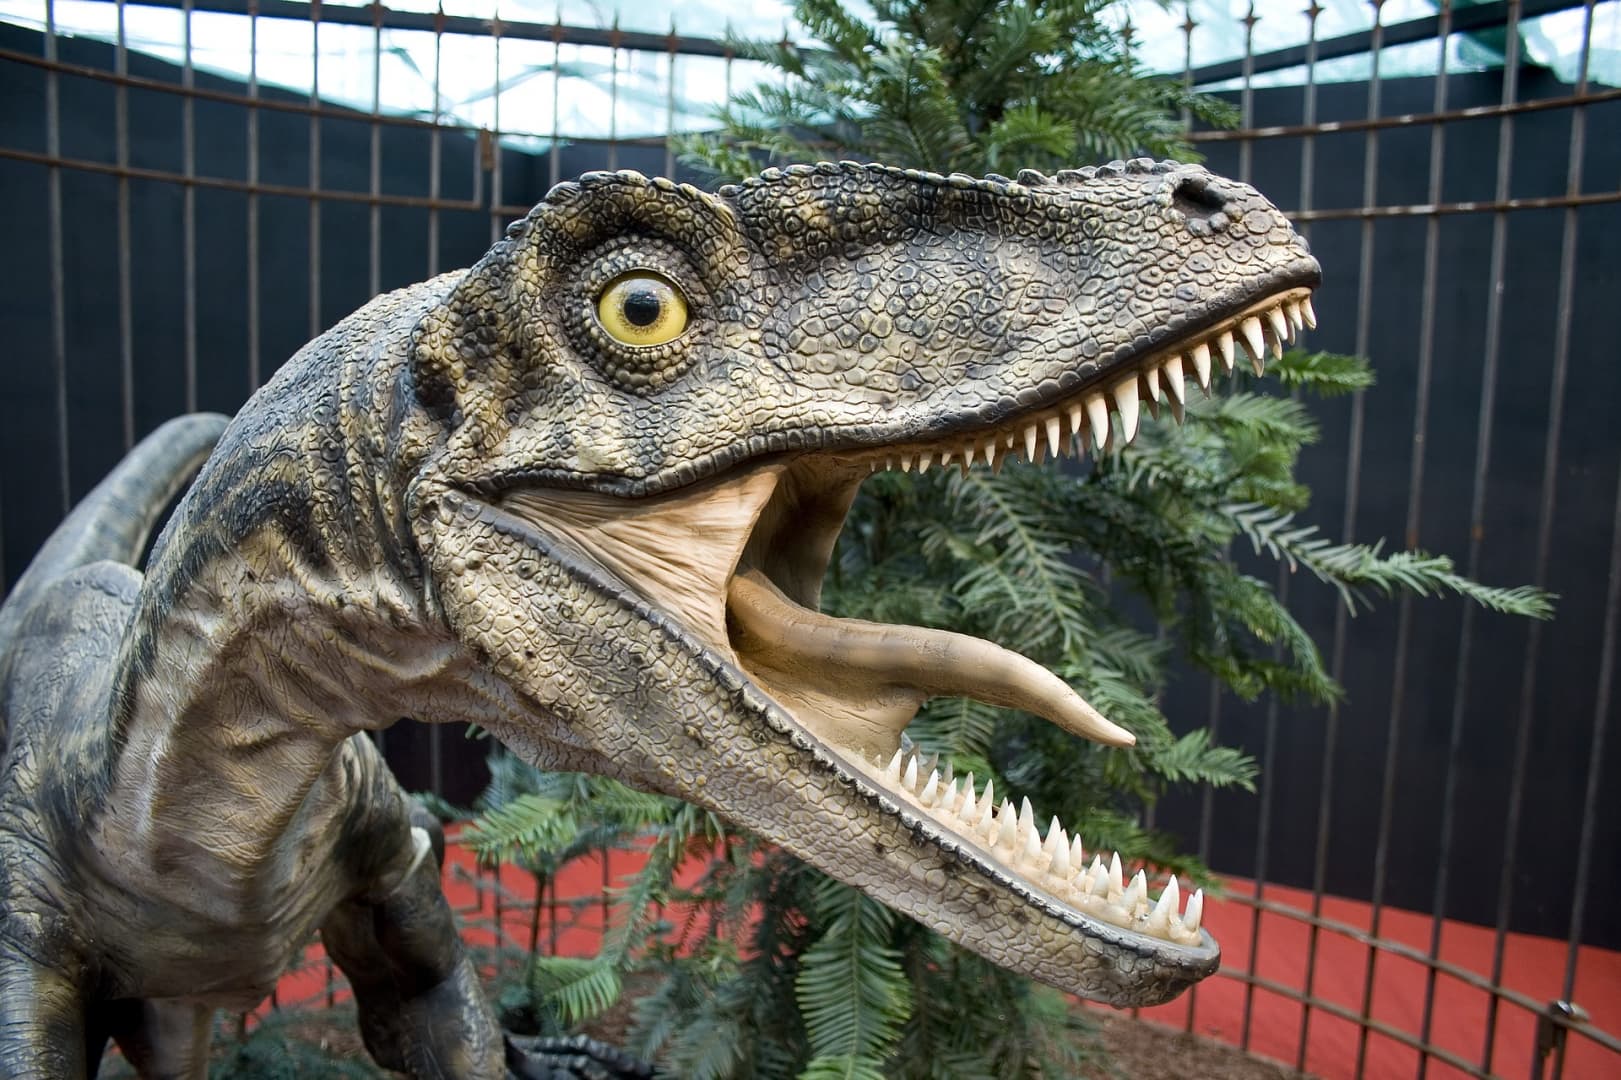 Kilencvenmillió éves raptorcsontokat találtak az ELTE kutatói Ausztriában